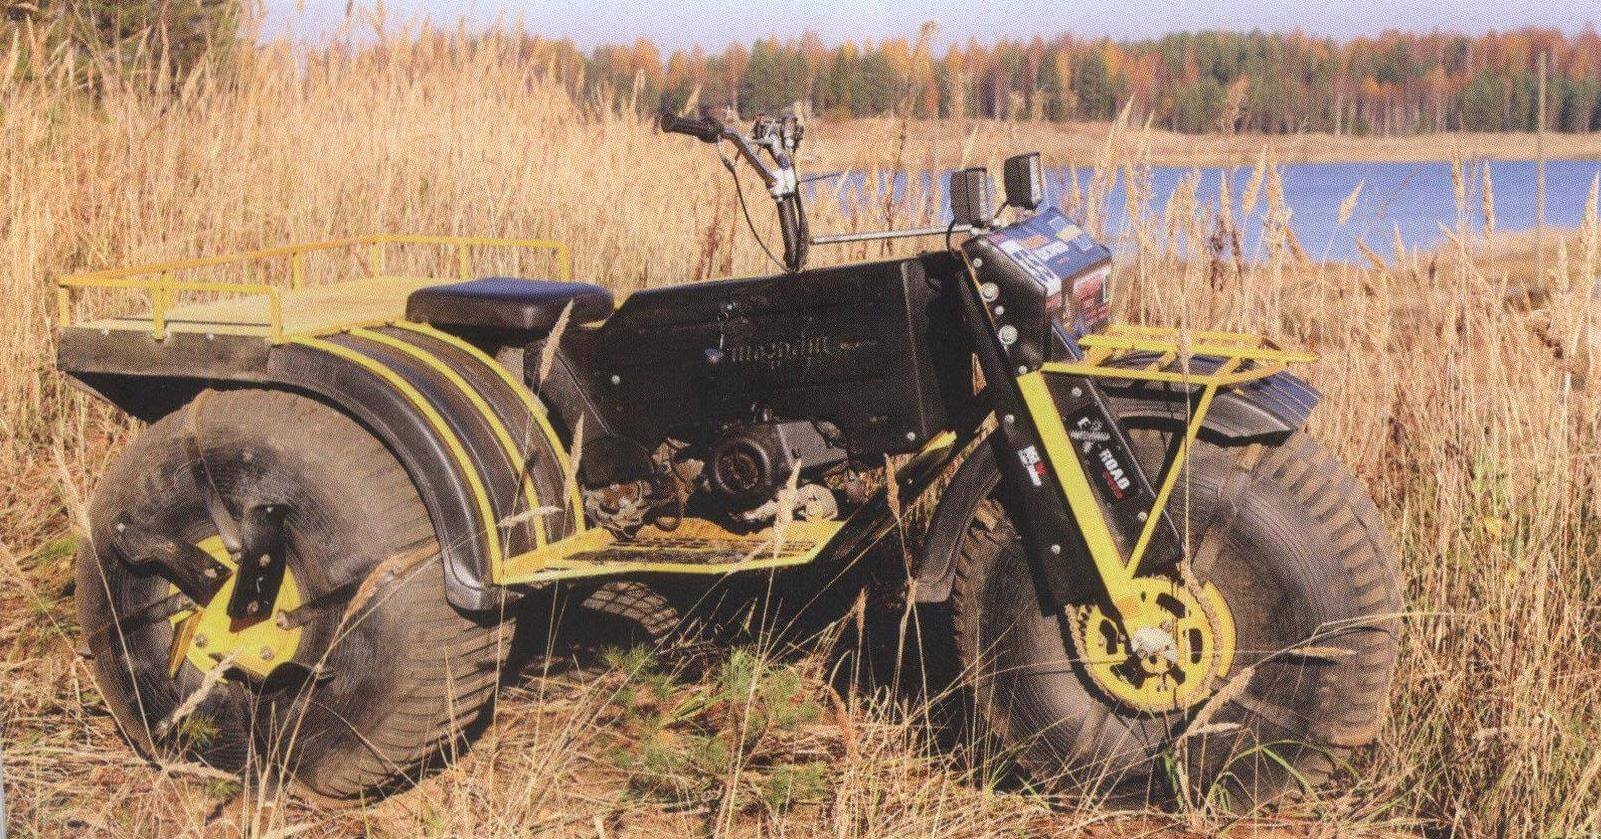 Трицикл «Шограш». На задних колесах установлены съемные гребные лонасги, использующиеся на воде и в болотах